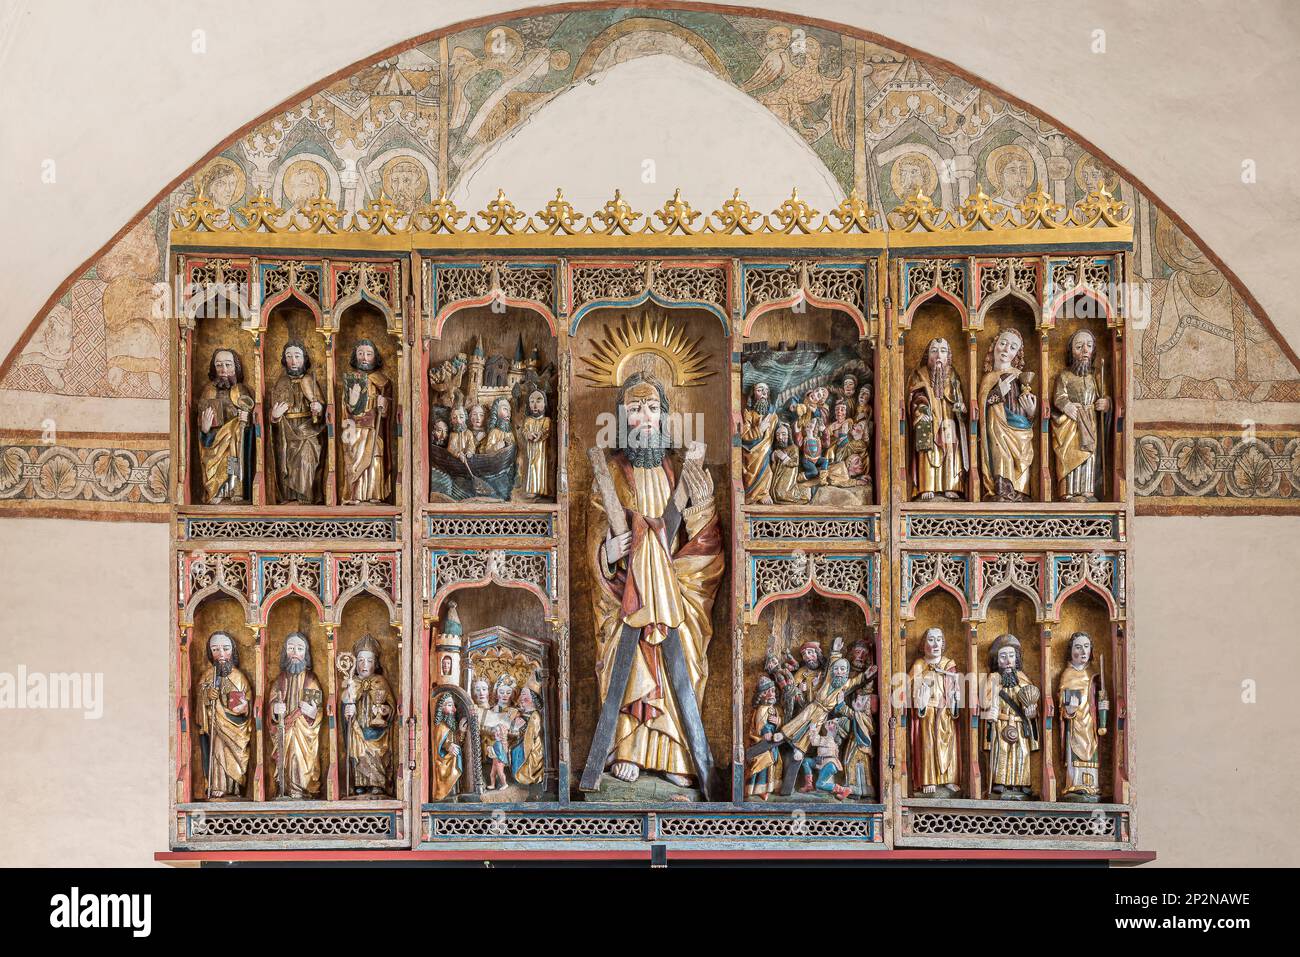 Andrea, apostoli e santi su una pala d'altare scolpita nella Chiesa di Keldeby, Danimarca, 10 ottobre 2022 Foto Stock